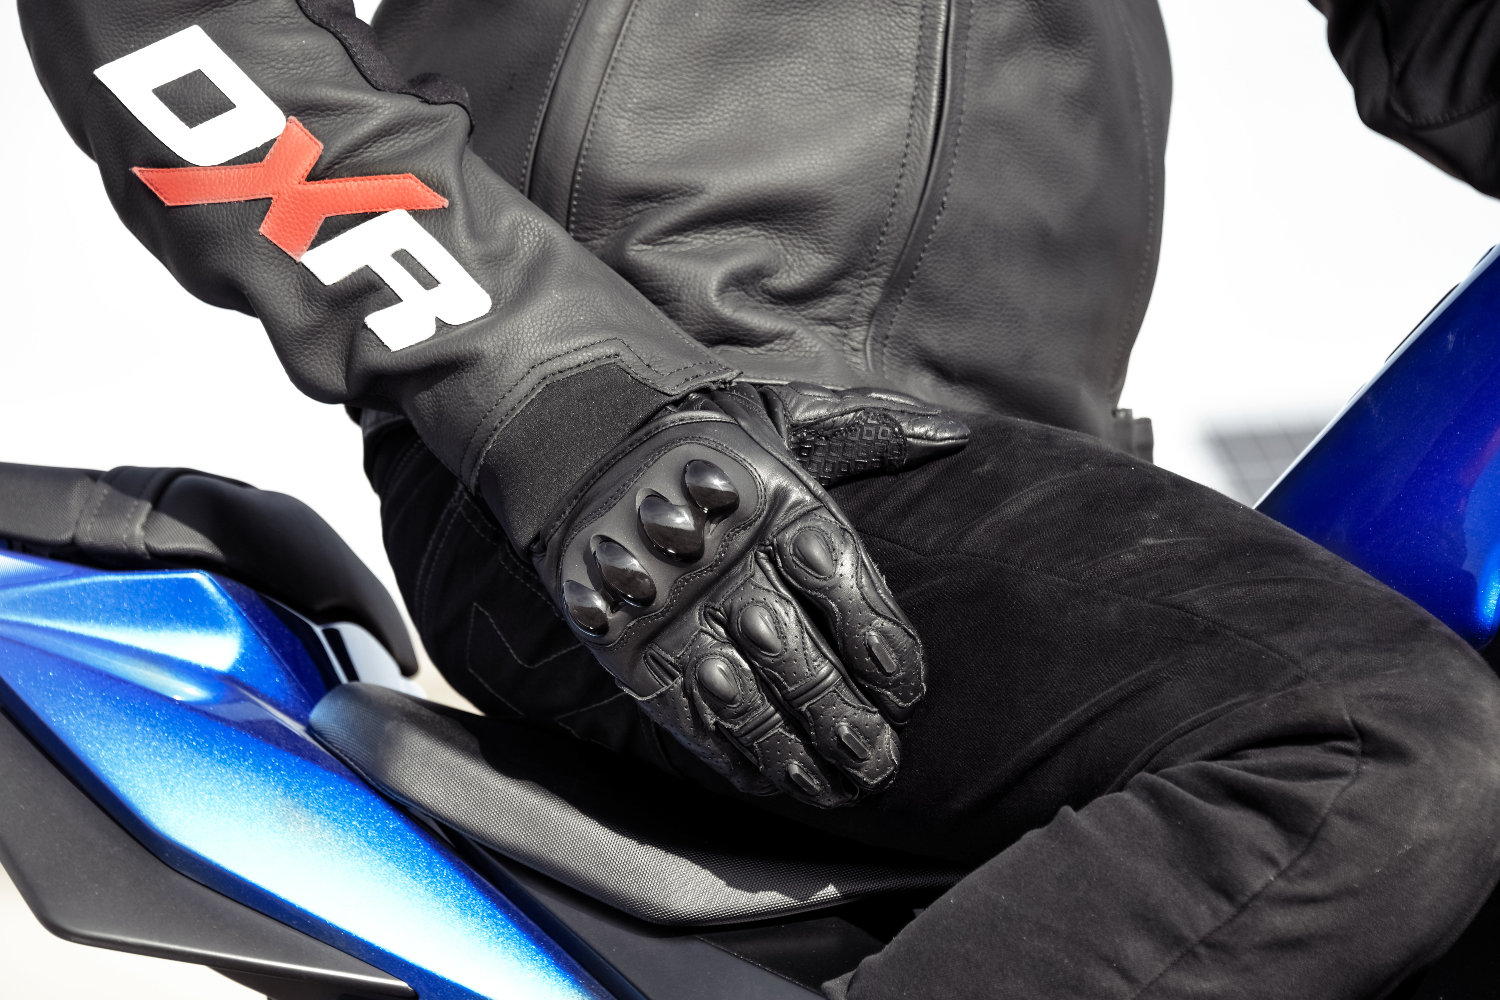 Le décret n°2016-1232 du 19 septembre 2016 a rendu les gants moto obligatoires